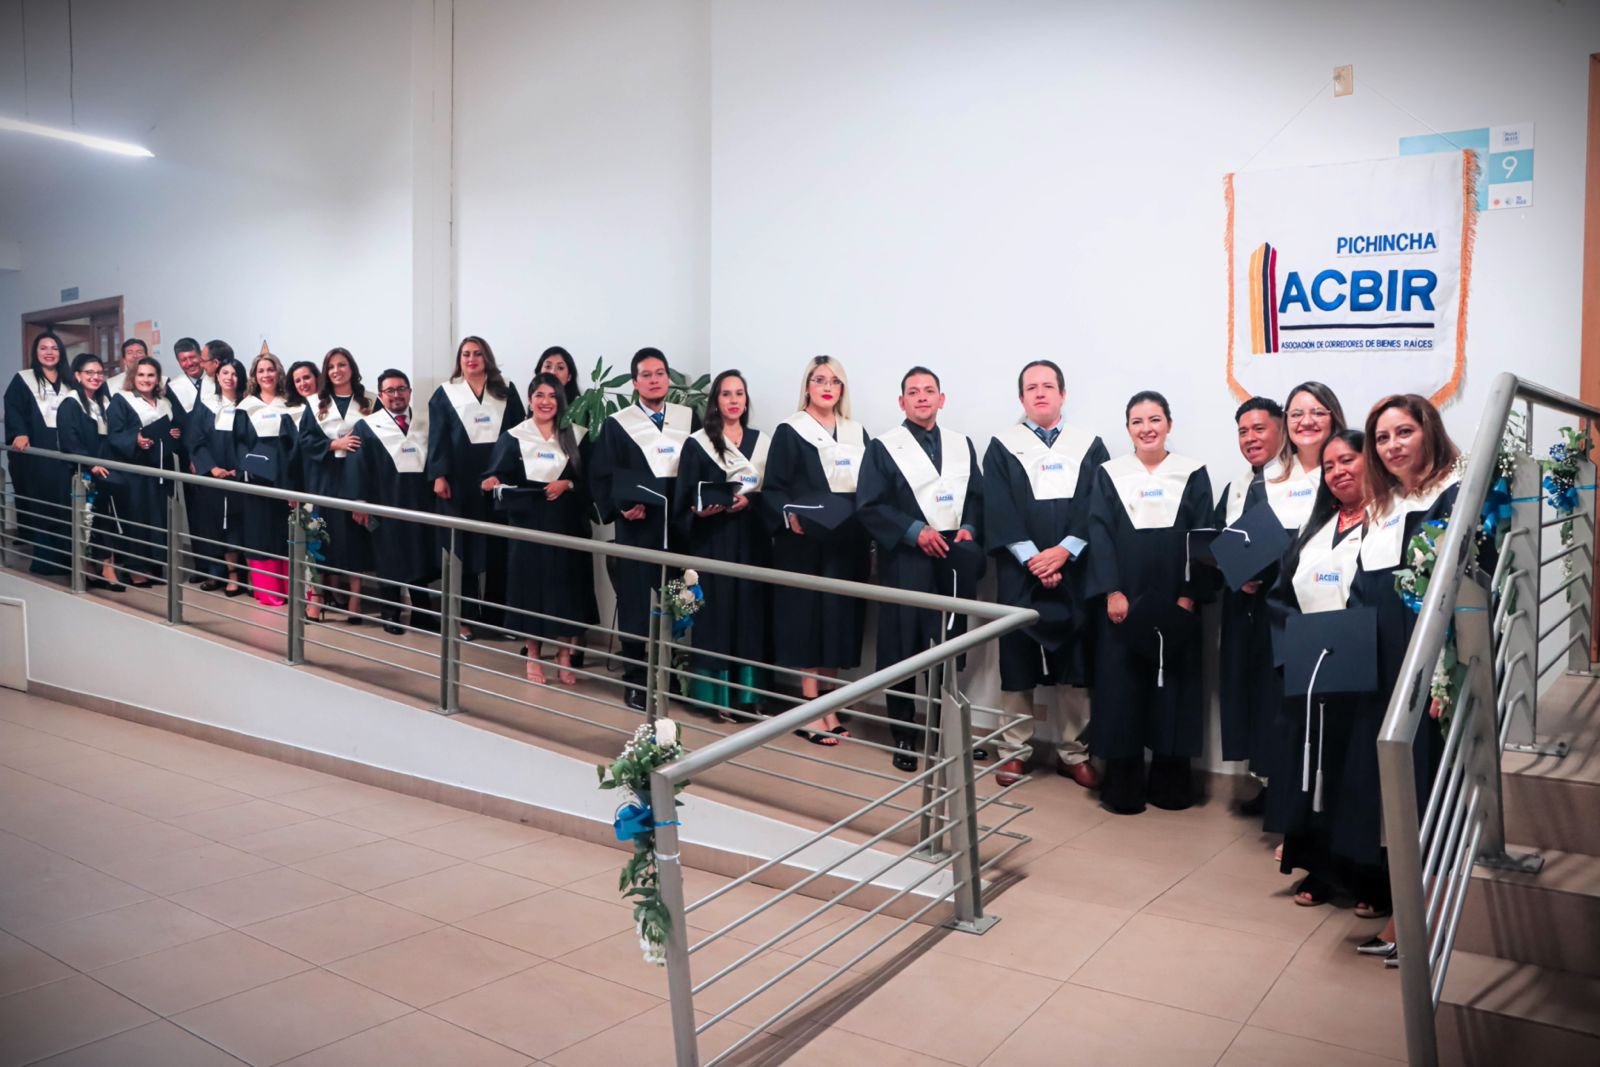 Graduación de la Promoción 46 de Corredores de Bienes Raíces de ACBIR  Pichincha